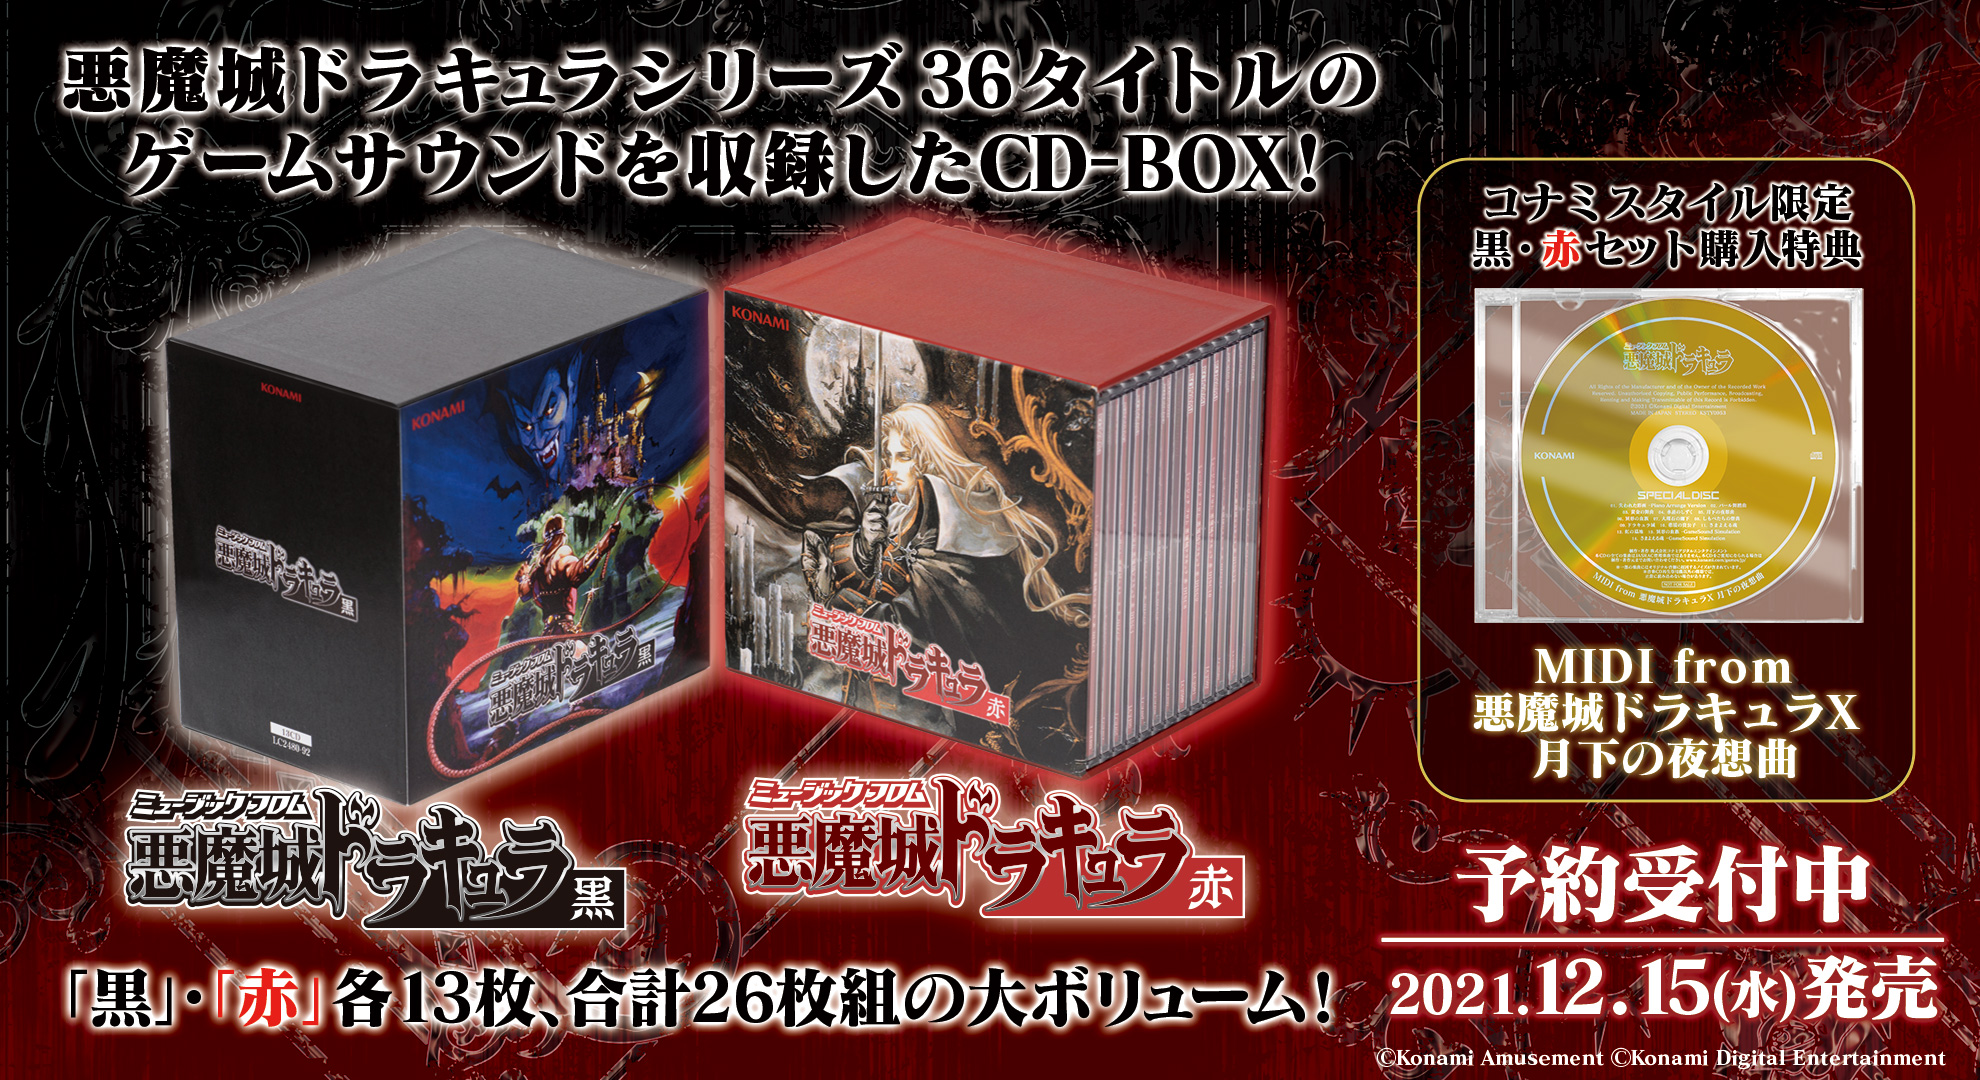 悪魔城ドラキュラシリーズの楽曲を収録したCD-BOX2種が発売決定